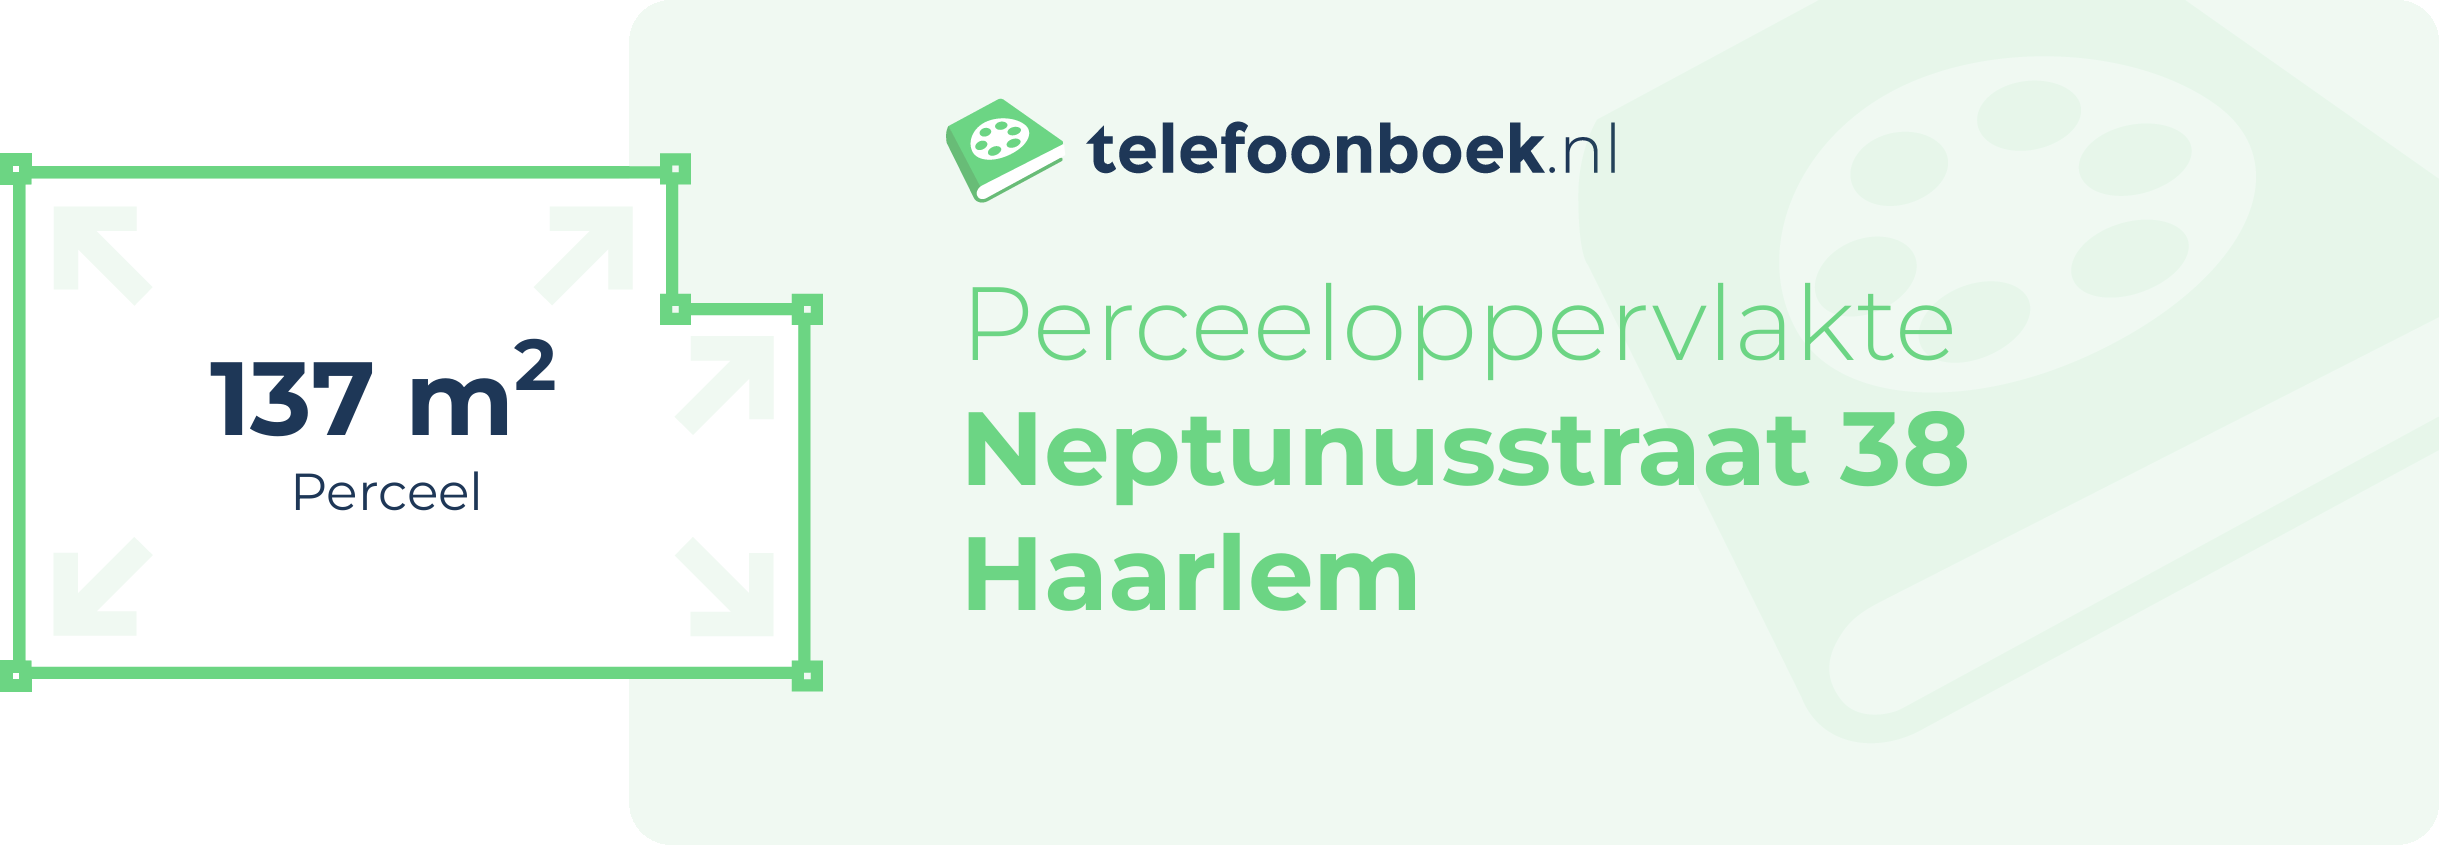 Perceeloppervlakte Neptunusstraat 38 Haarlem